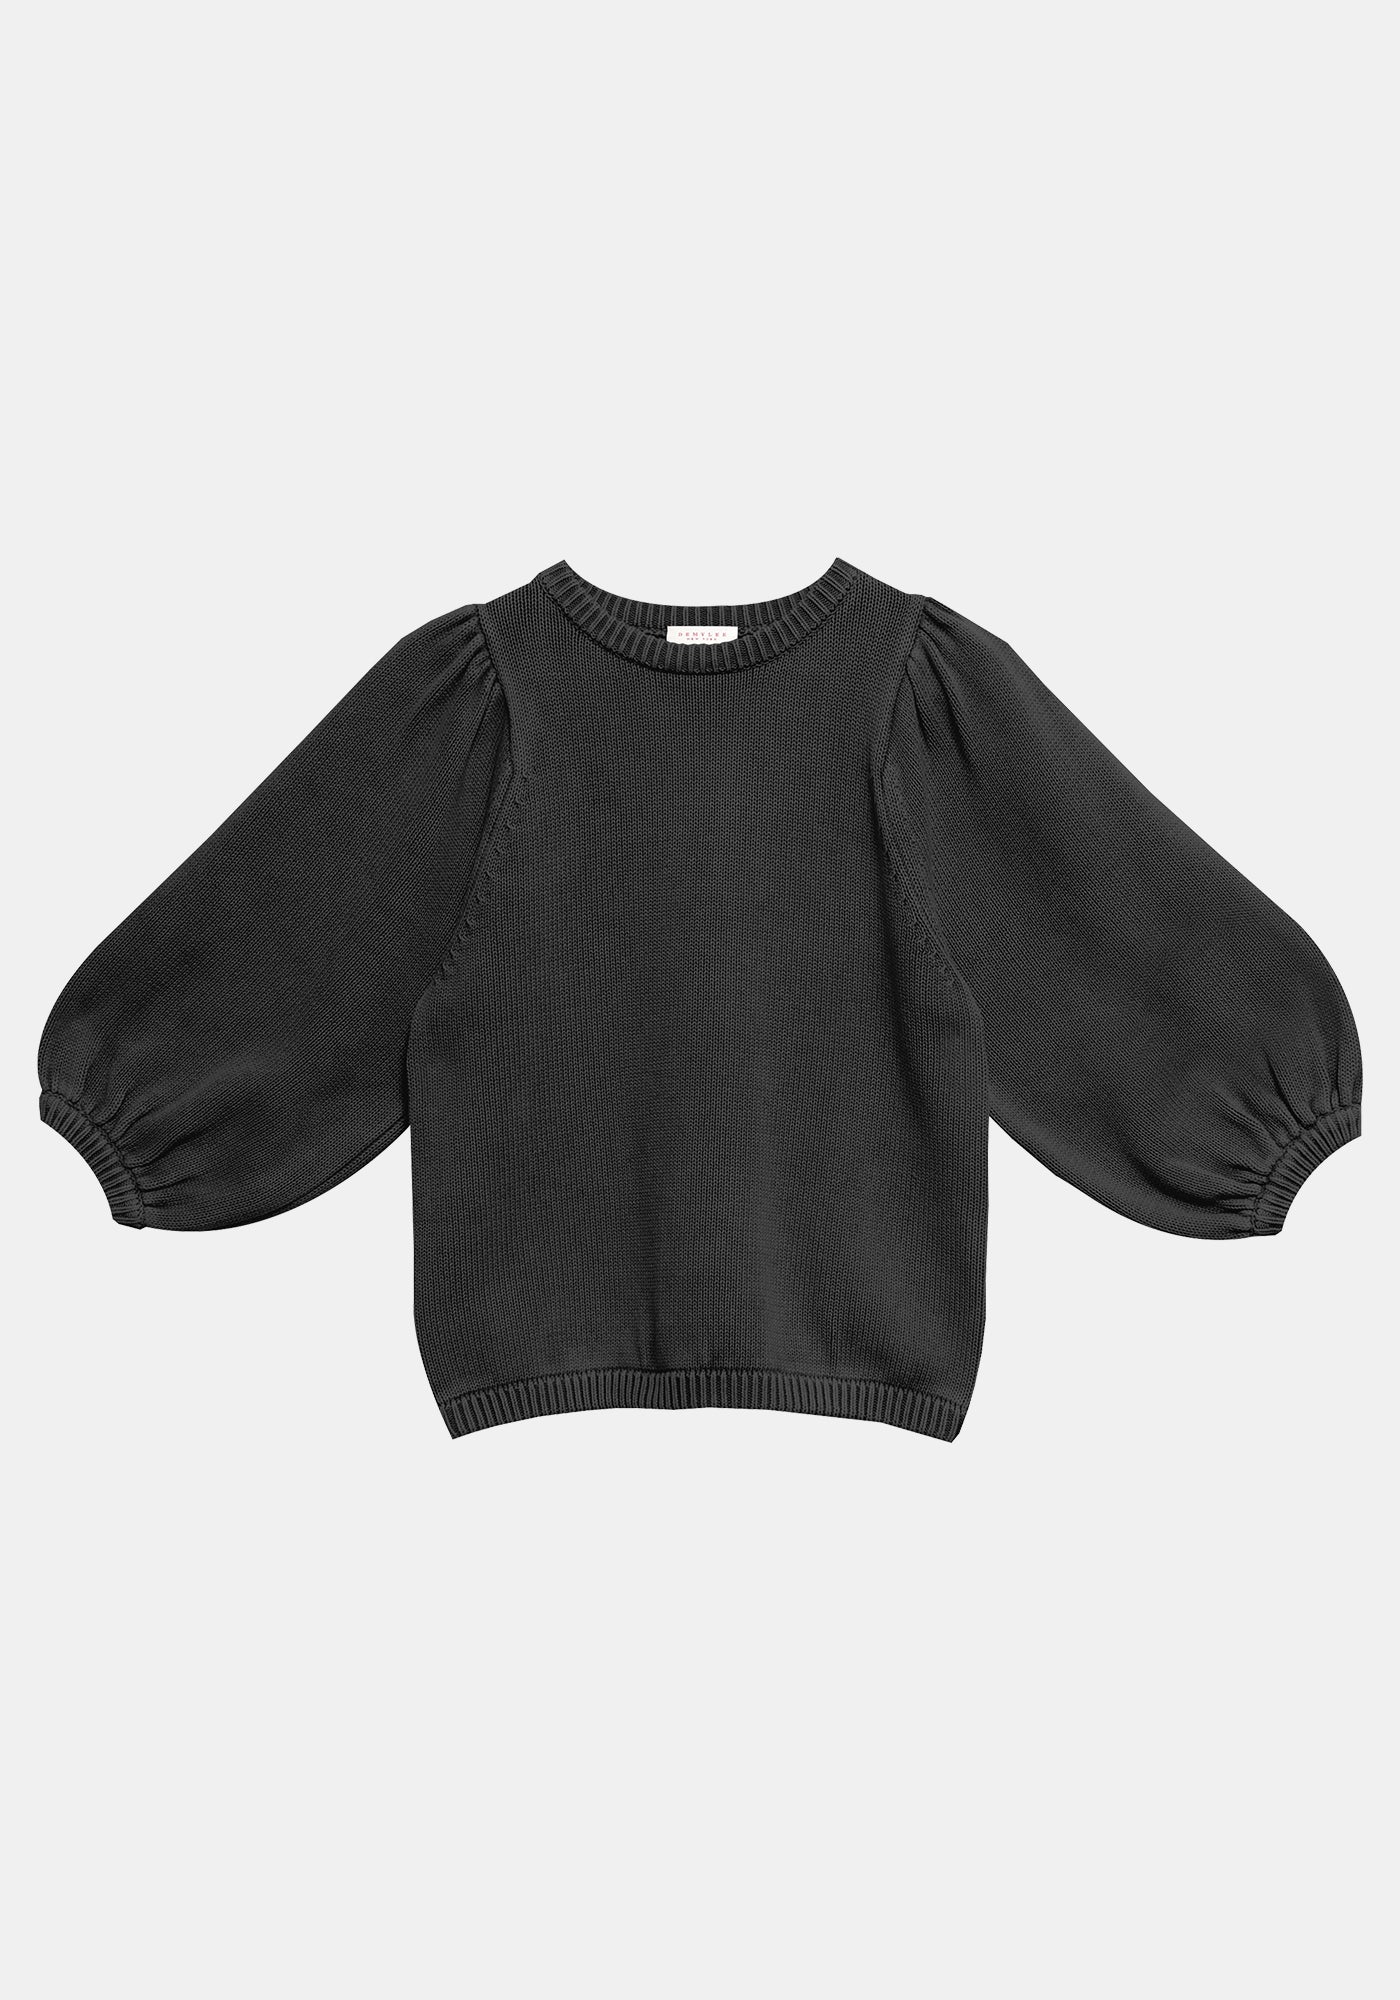 Vayn Sweater